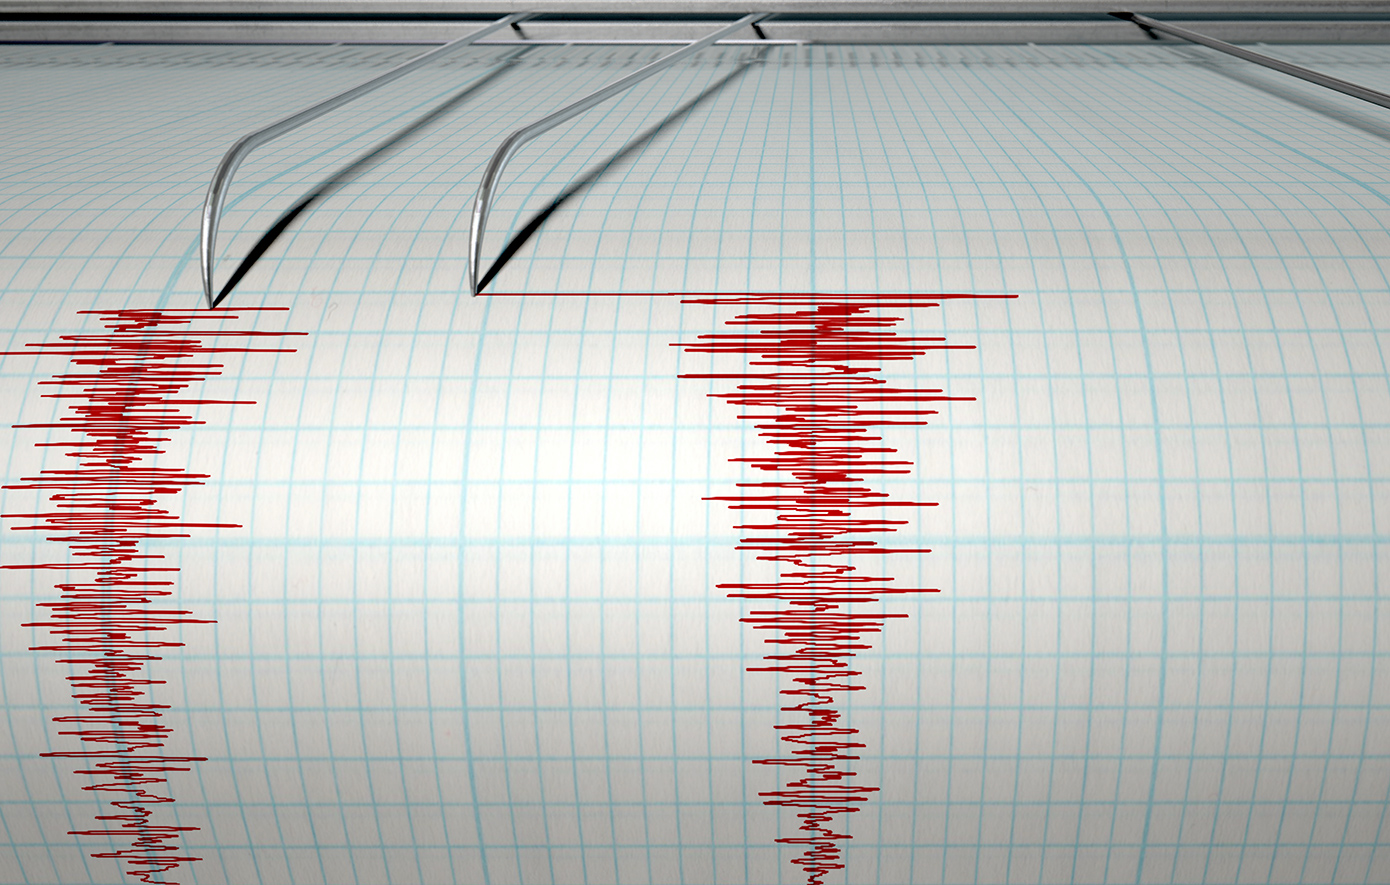 Σεισμός 3,3 Ρίχτερ στην Ιτέα